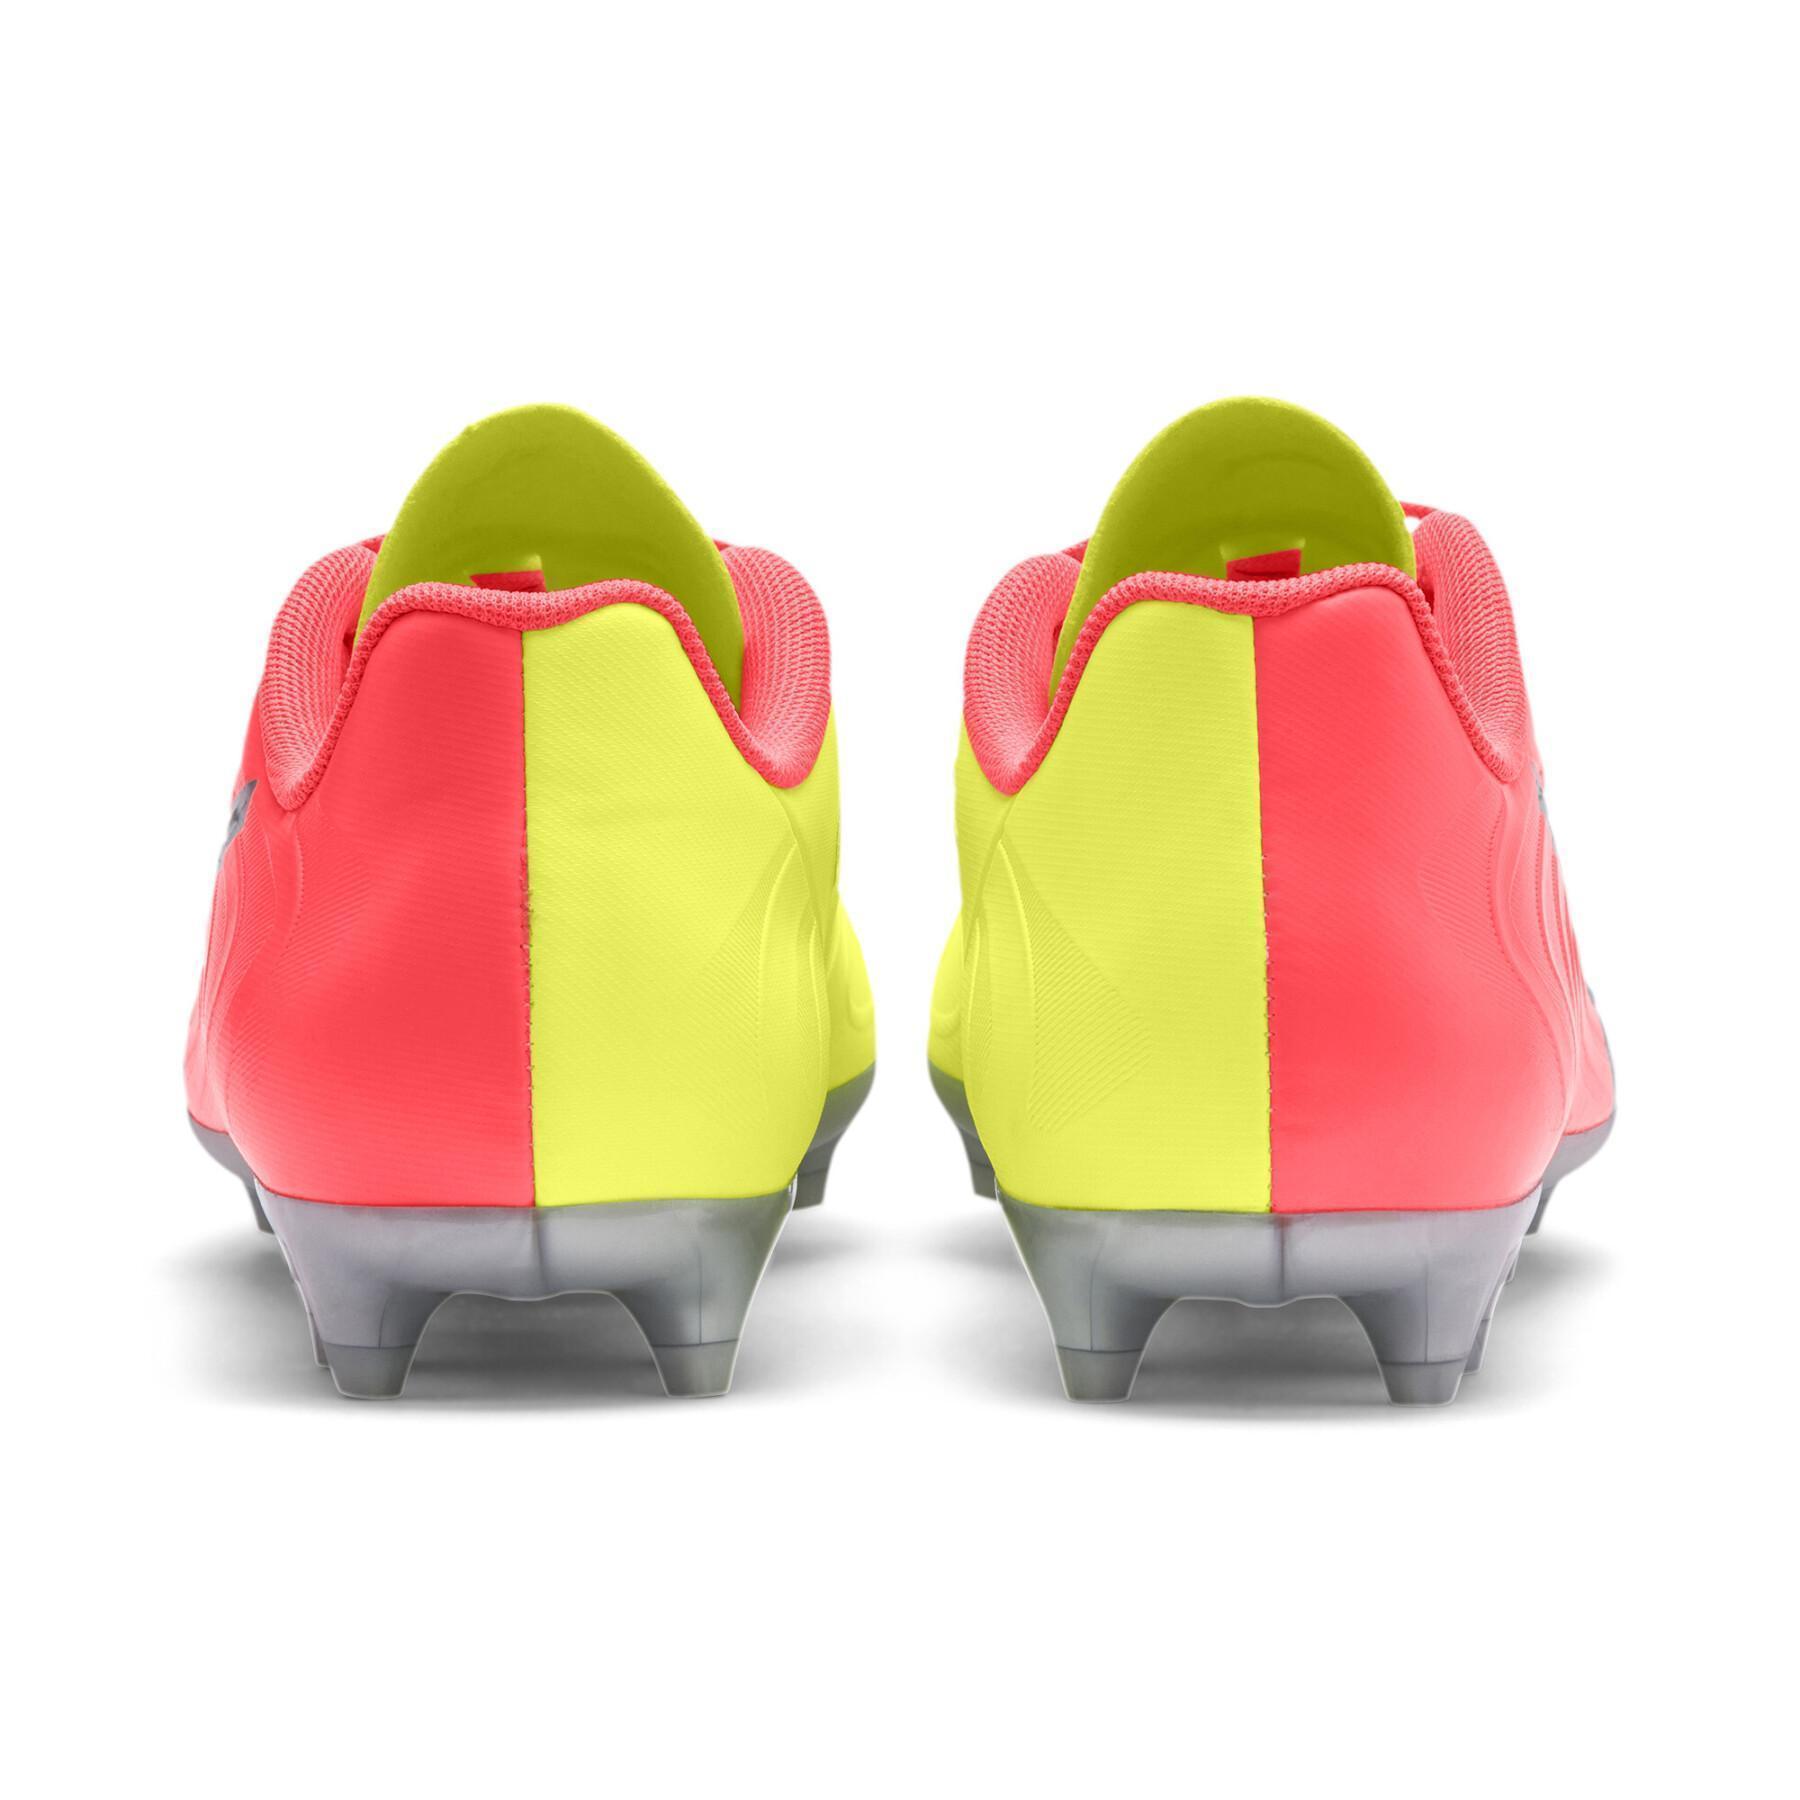 Children's soccer shoes Puma One 20.4 Osg FG/AG